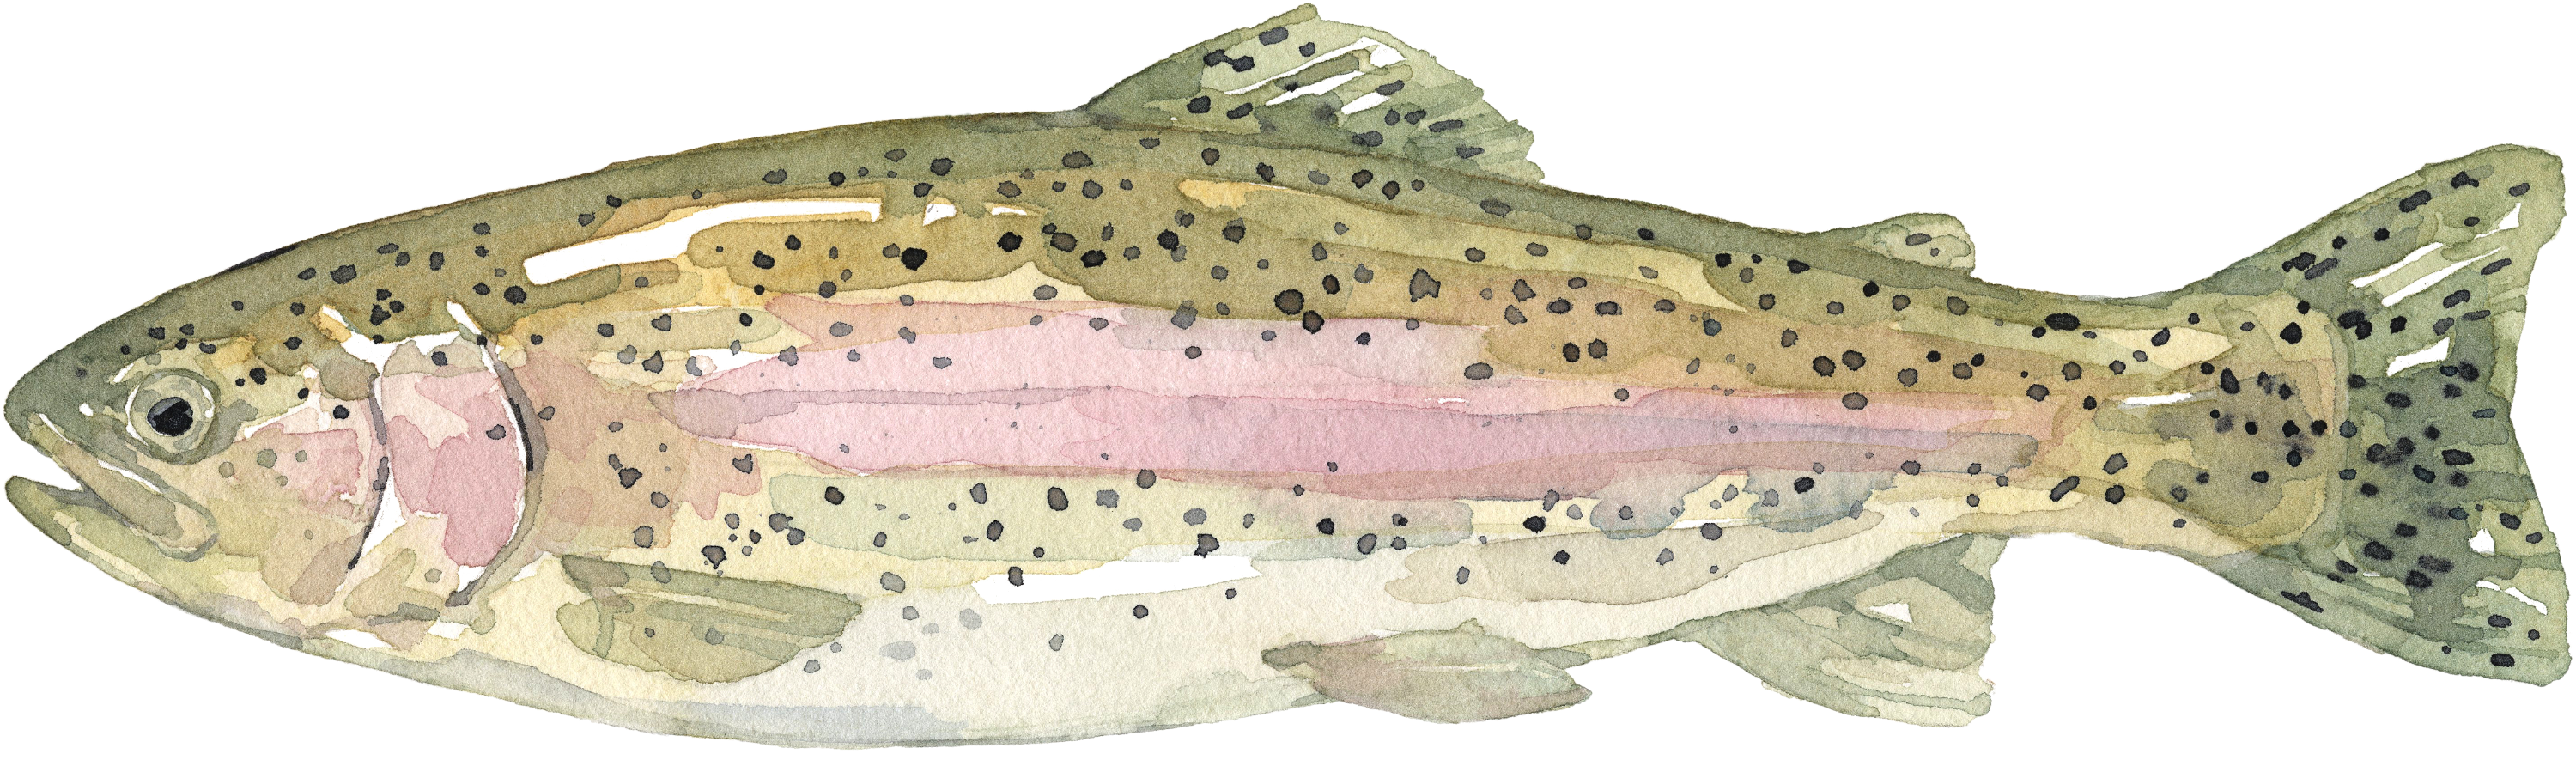 Fischlexikon: Lachsforelle